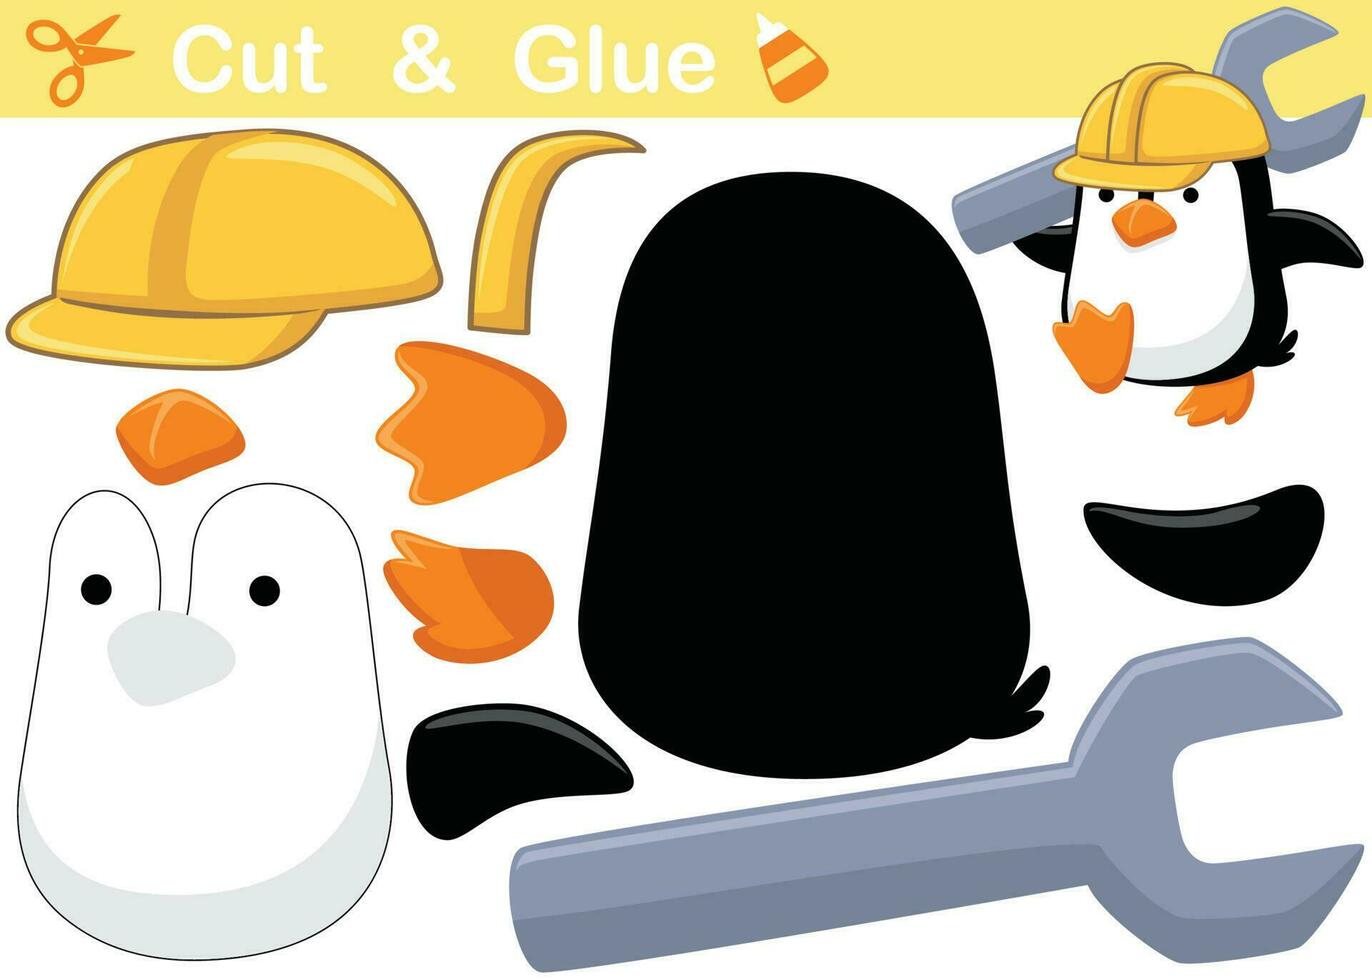 pequeño pingüino vistiendo casco con grande mono llave inglesa. separar y pegado vector dibujos animados ilustración